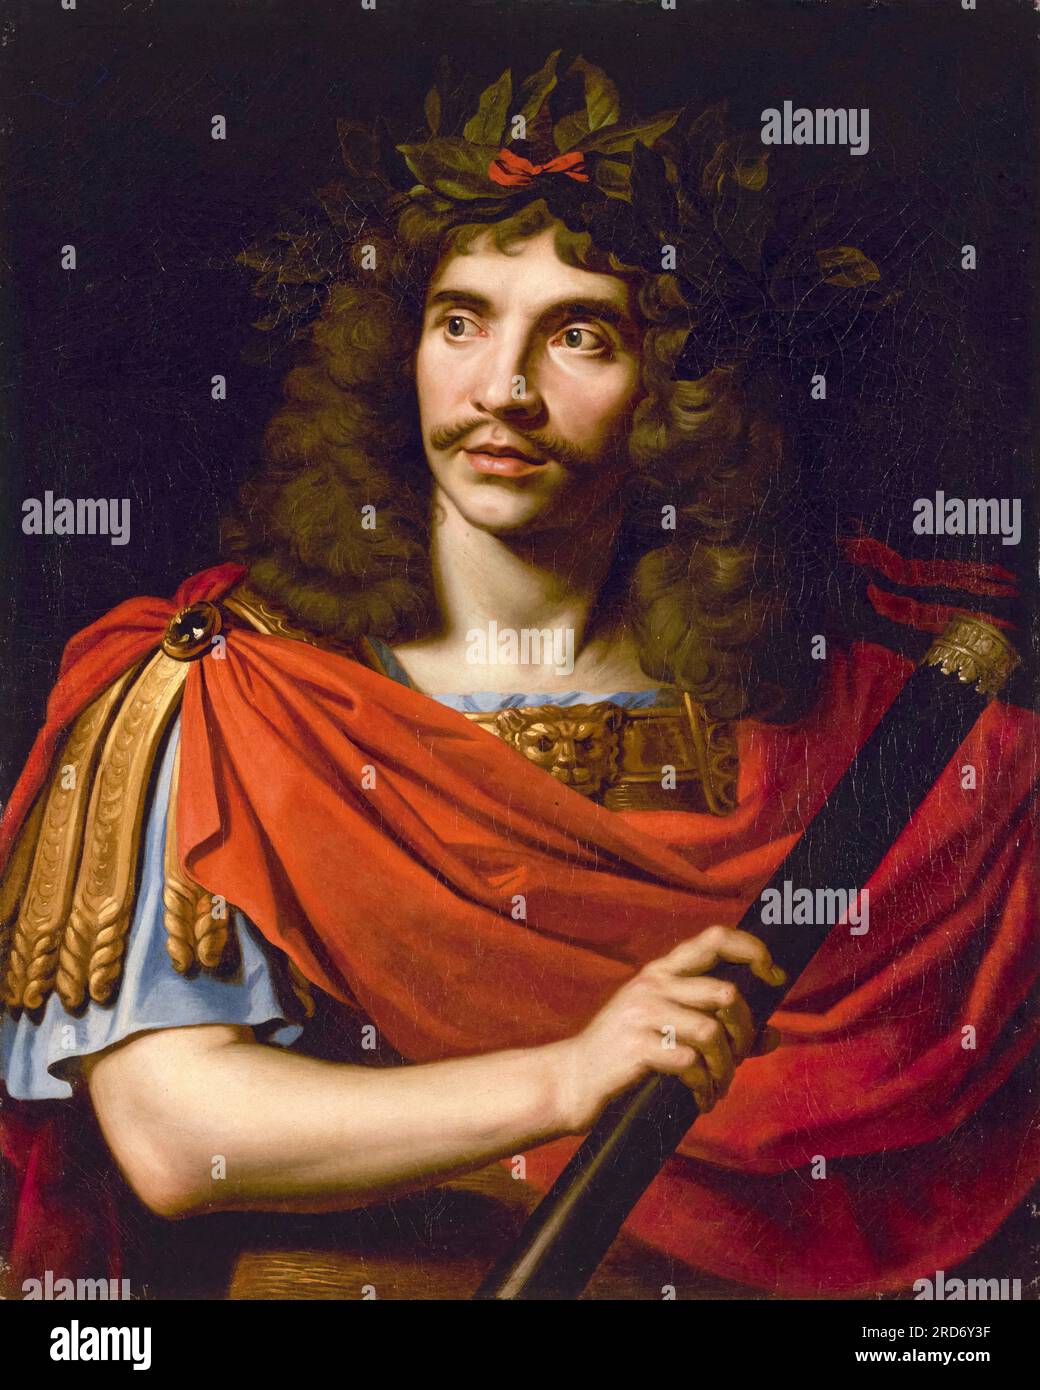 Molière (Jean-Baptiste Poquelin, 1622-1673) dans César dans la mort de Pompée, portrait à l'huile sur toile de Nicolas Mignard, vers 1650 Banque D'Images